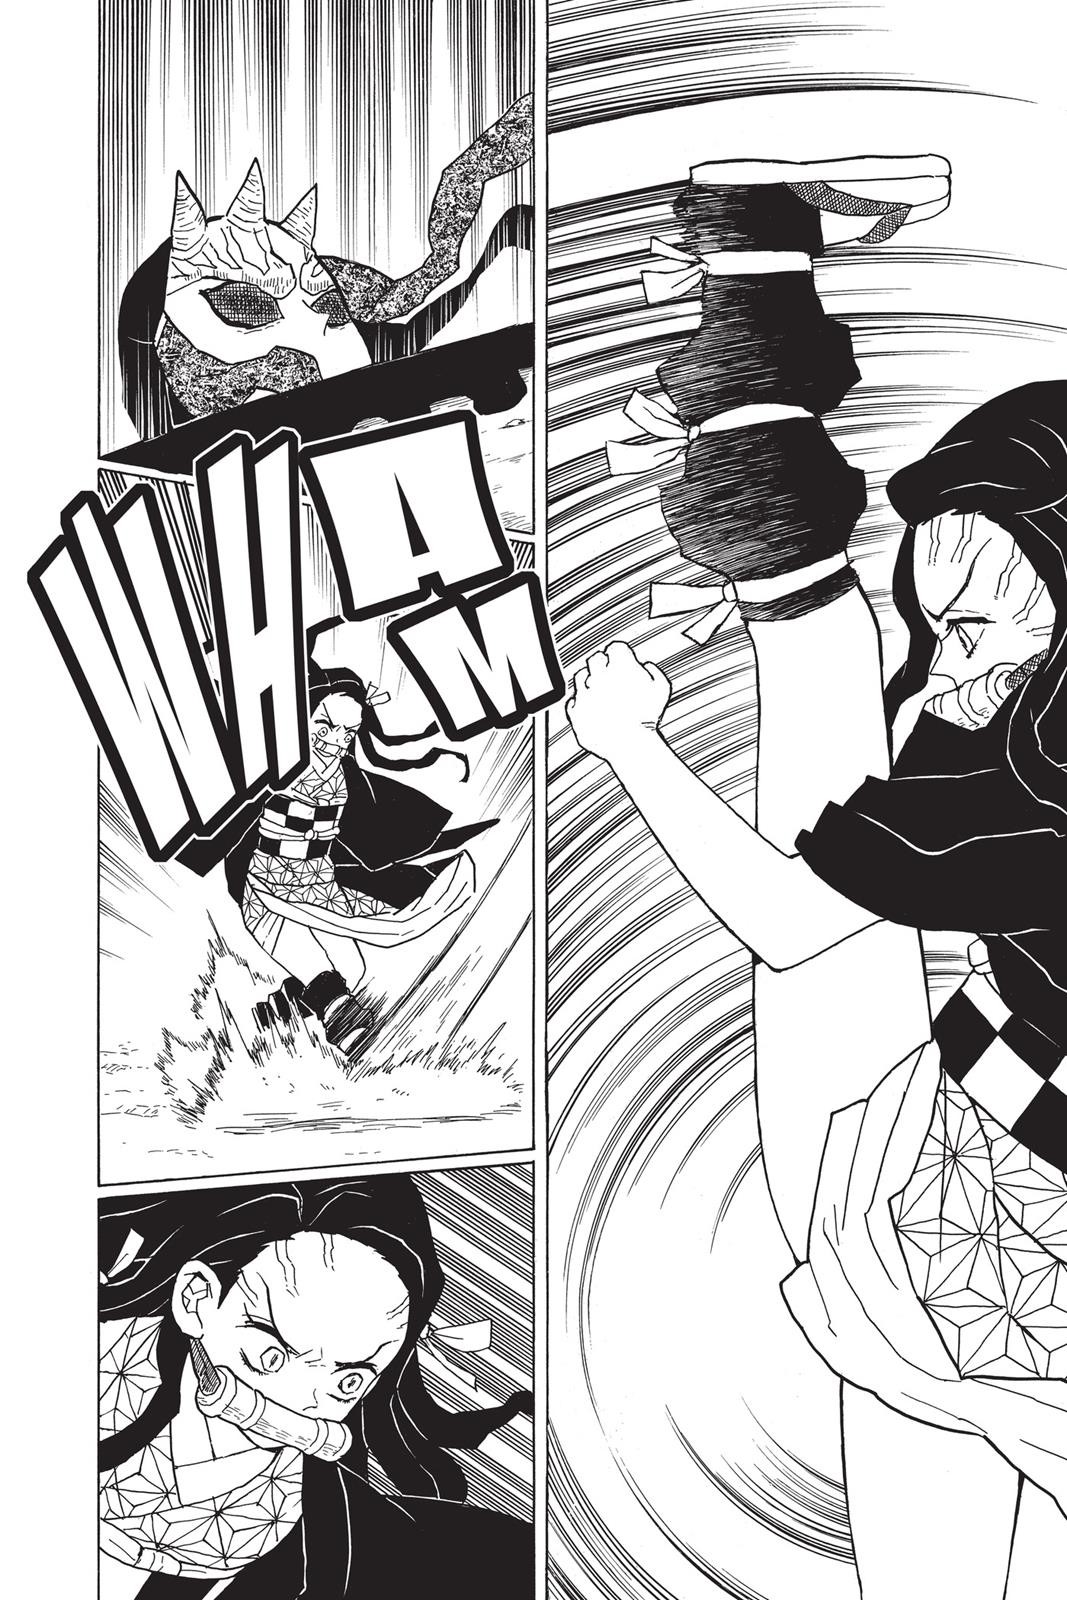 Demon Slayer Manga Manga Chapter - 12 - image 2